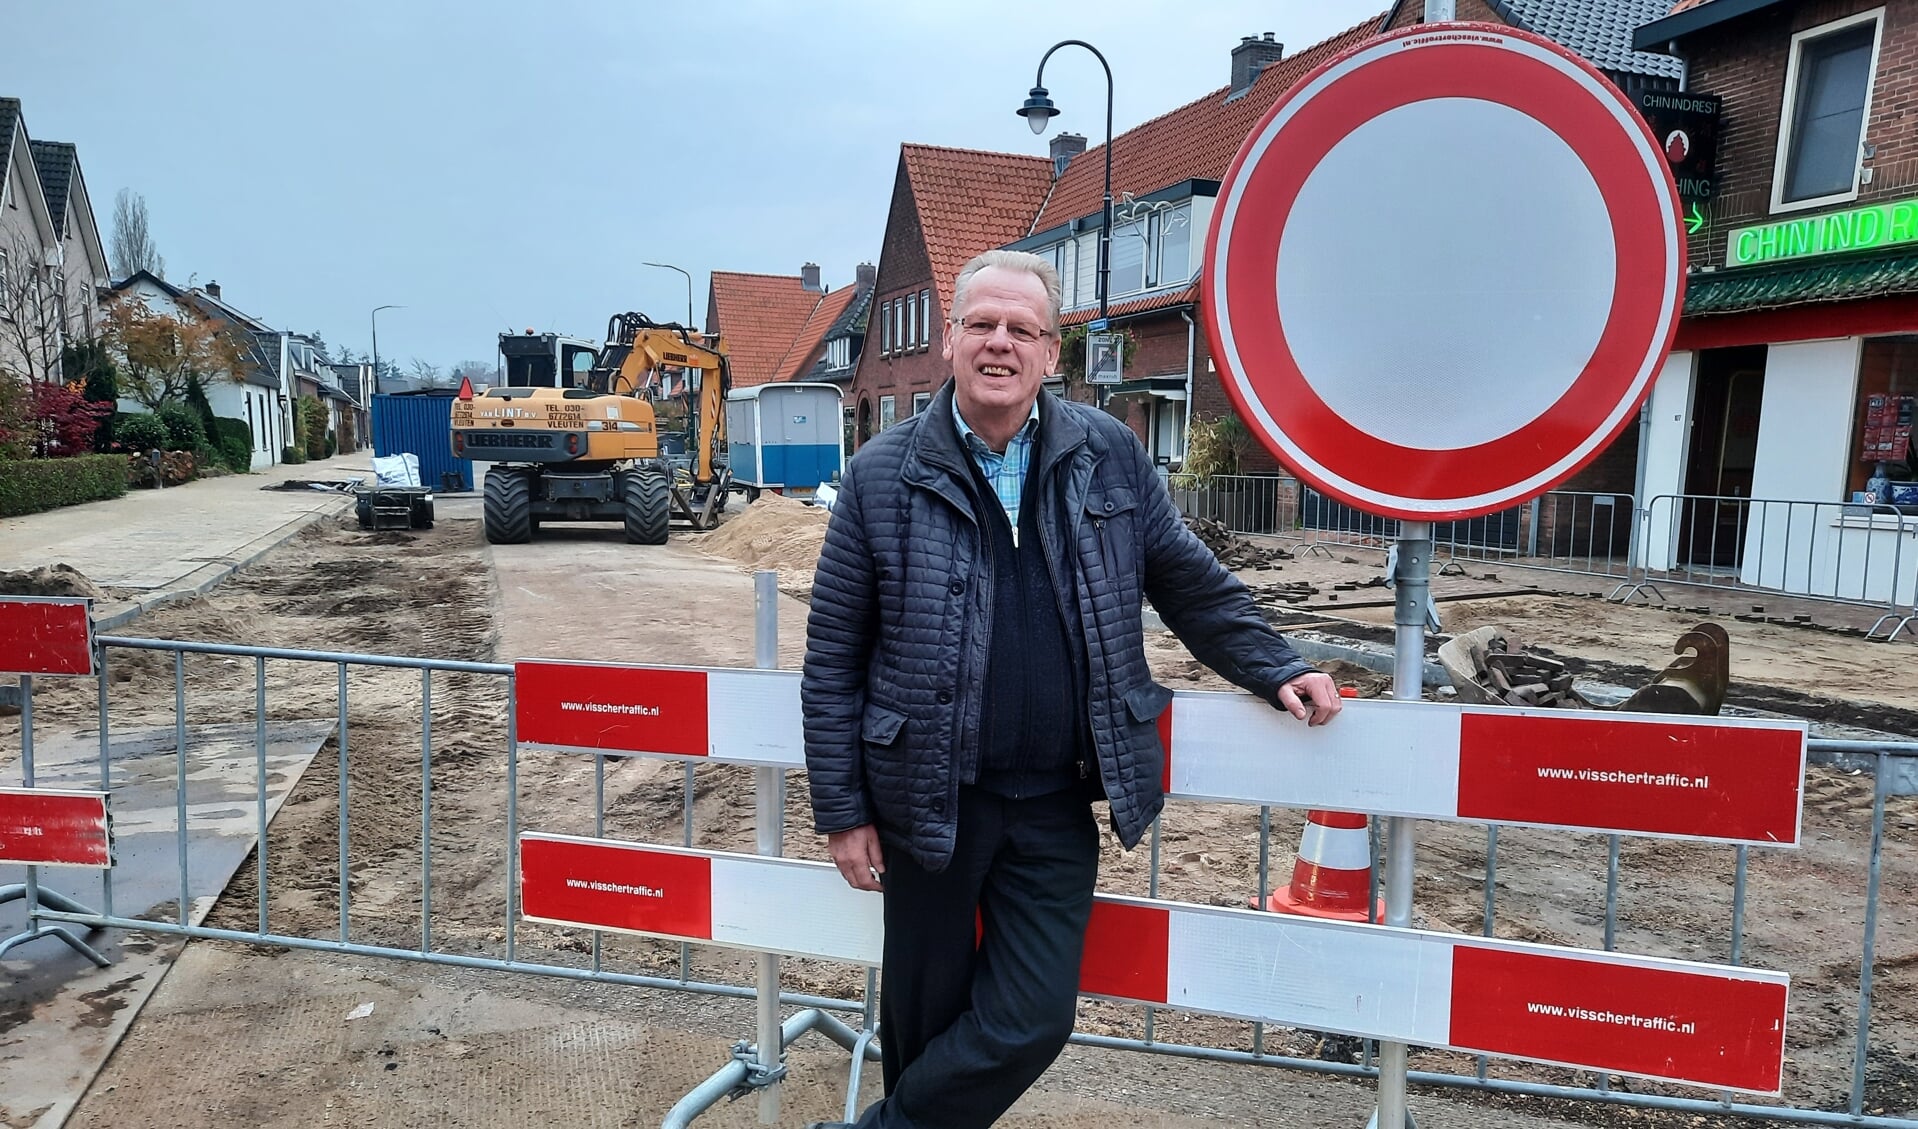 Hans Visser van de Winkeliersvereniging Hessenweg Looydijk kijkt uit naar de afronding van de werkzaamheden